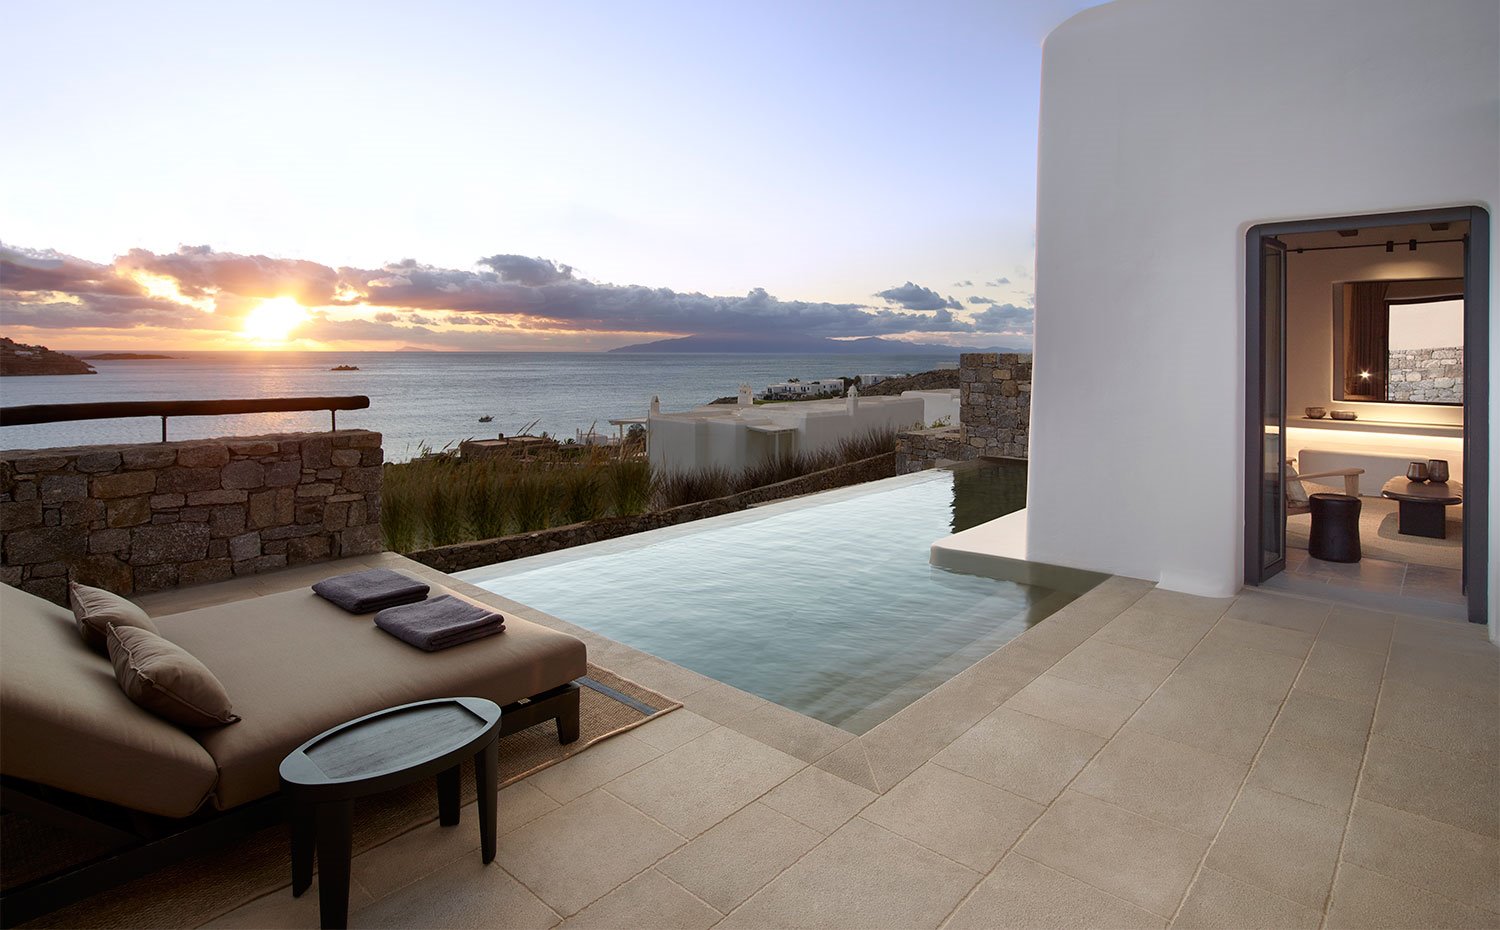 Vista de la terraza con tumbona y mesilla auxiliar junto a piscina infinita y vistas al mar